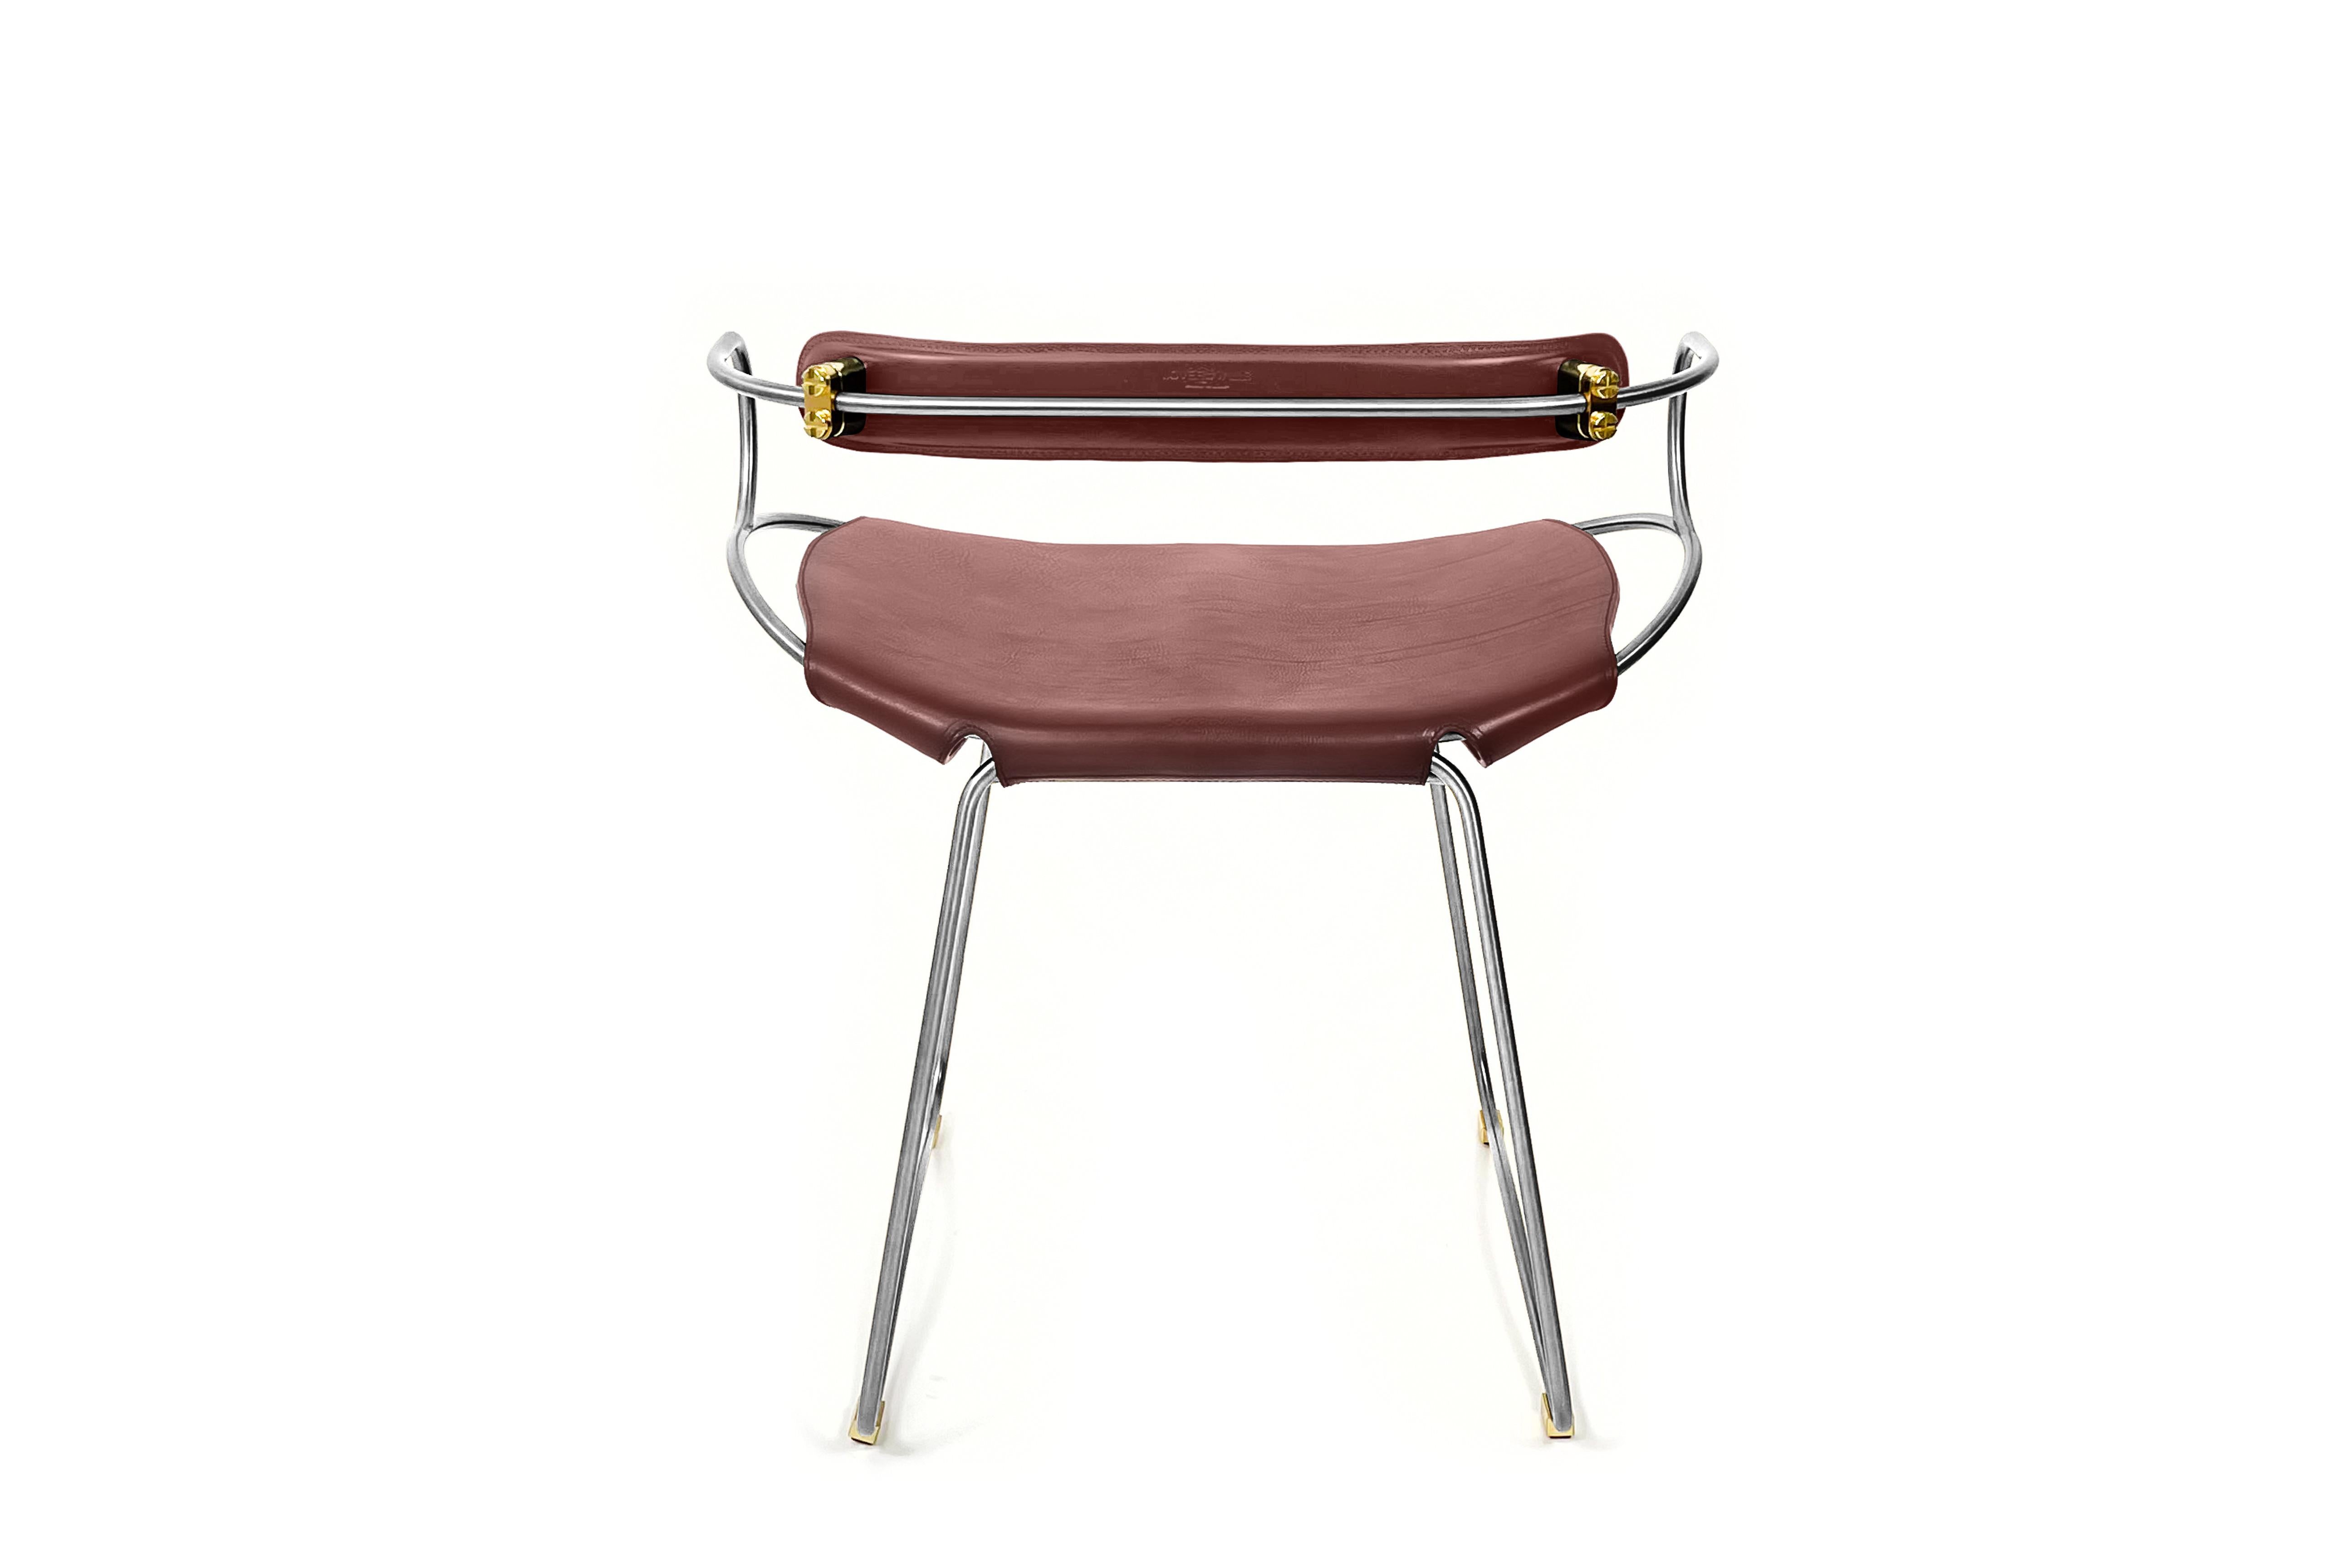 Der Hug Contemporary Tischhocker mit Rückenlehne wurde mit einer leichten Ästhetik entworfen und konzipiert. Die leichte Schwingung der Stahlstange von 12 mm wird durch die Flexibilität des doppelten 3,5 mm dicken Leders ergänzt. Wenn man in diesem